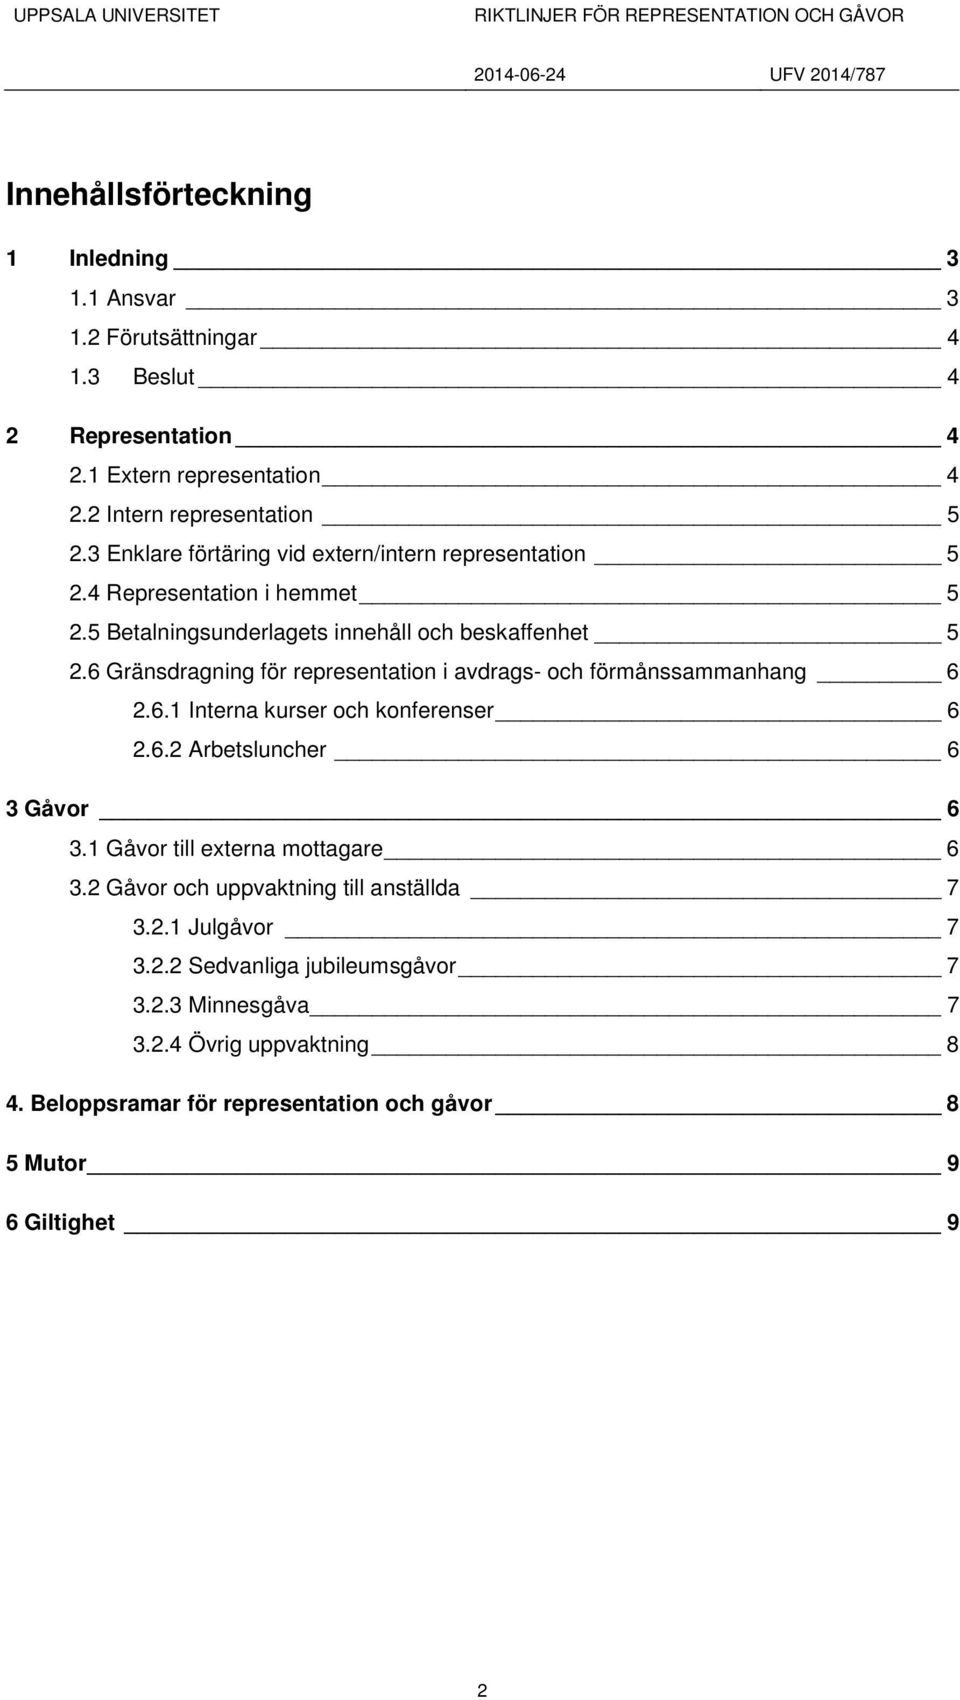 6 Gränsdragning för representation i avdrags- och förmånssammanhang 6 2.6.1 Interna kurser och konferenser 6 2.6.2 Arbetsluncher 6 3 Gåvor 6 3.